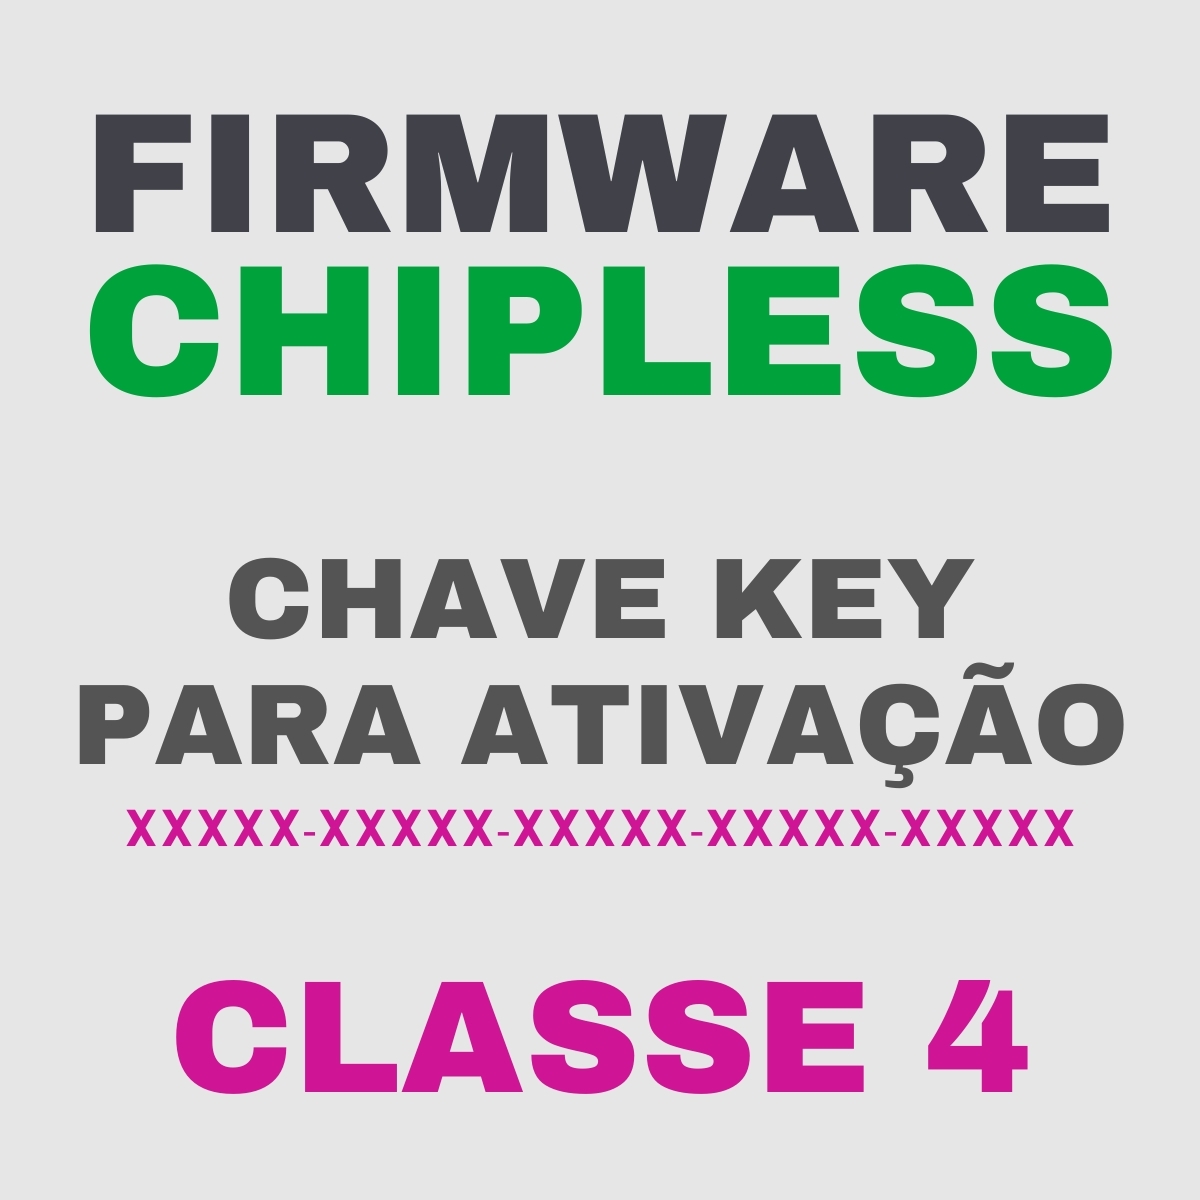 Chave Key de Ativação Firmware ChipLess para Impressora Epson - Classe 4